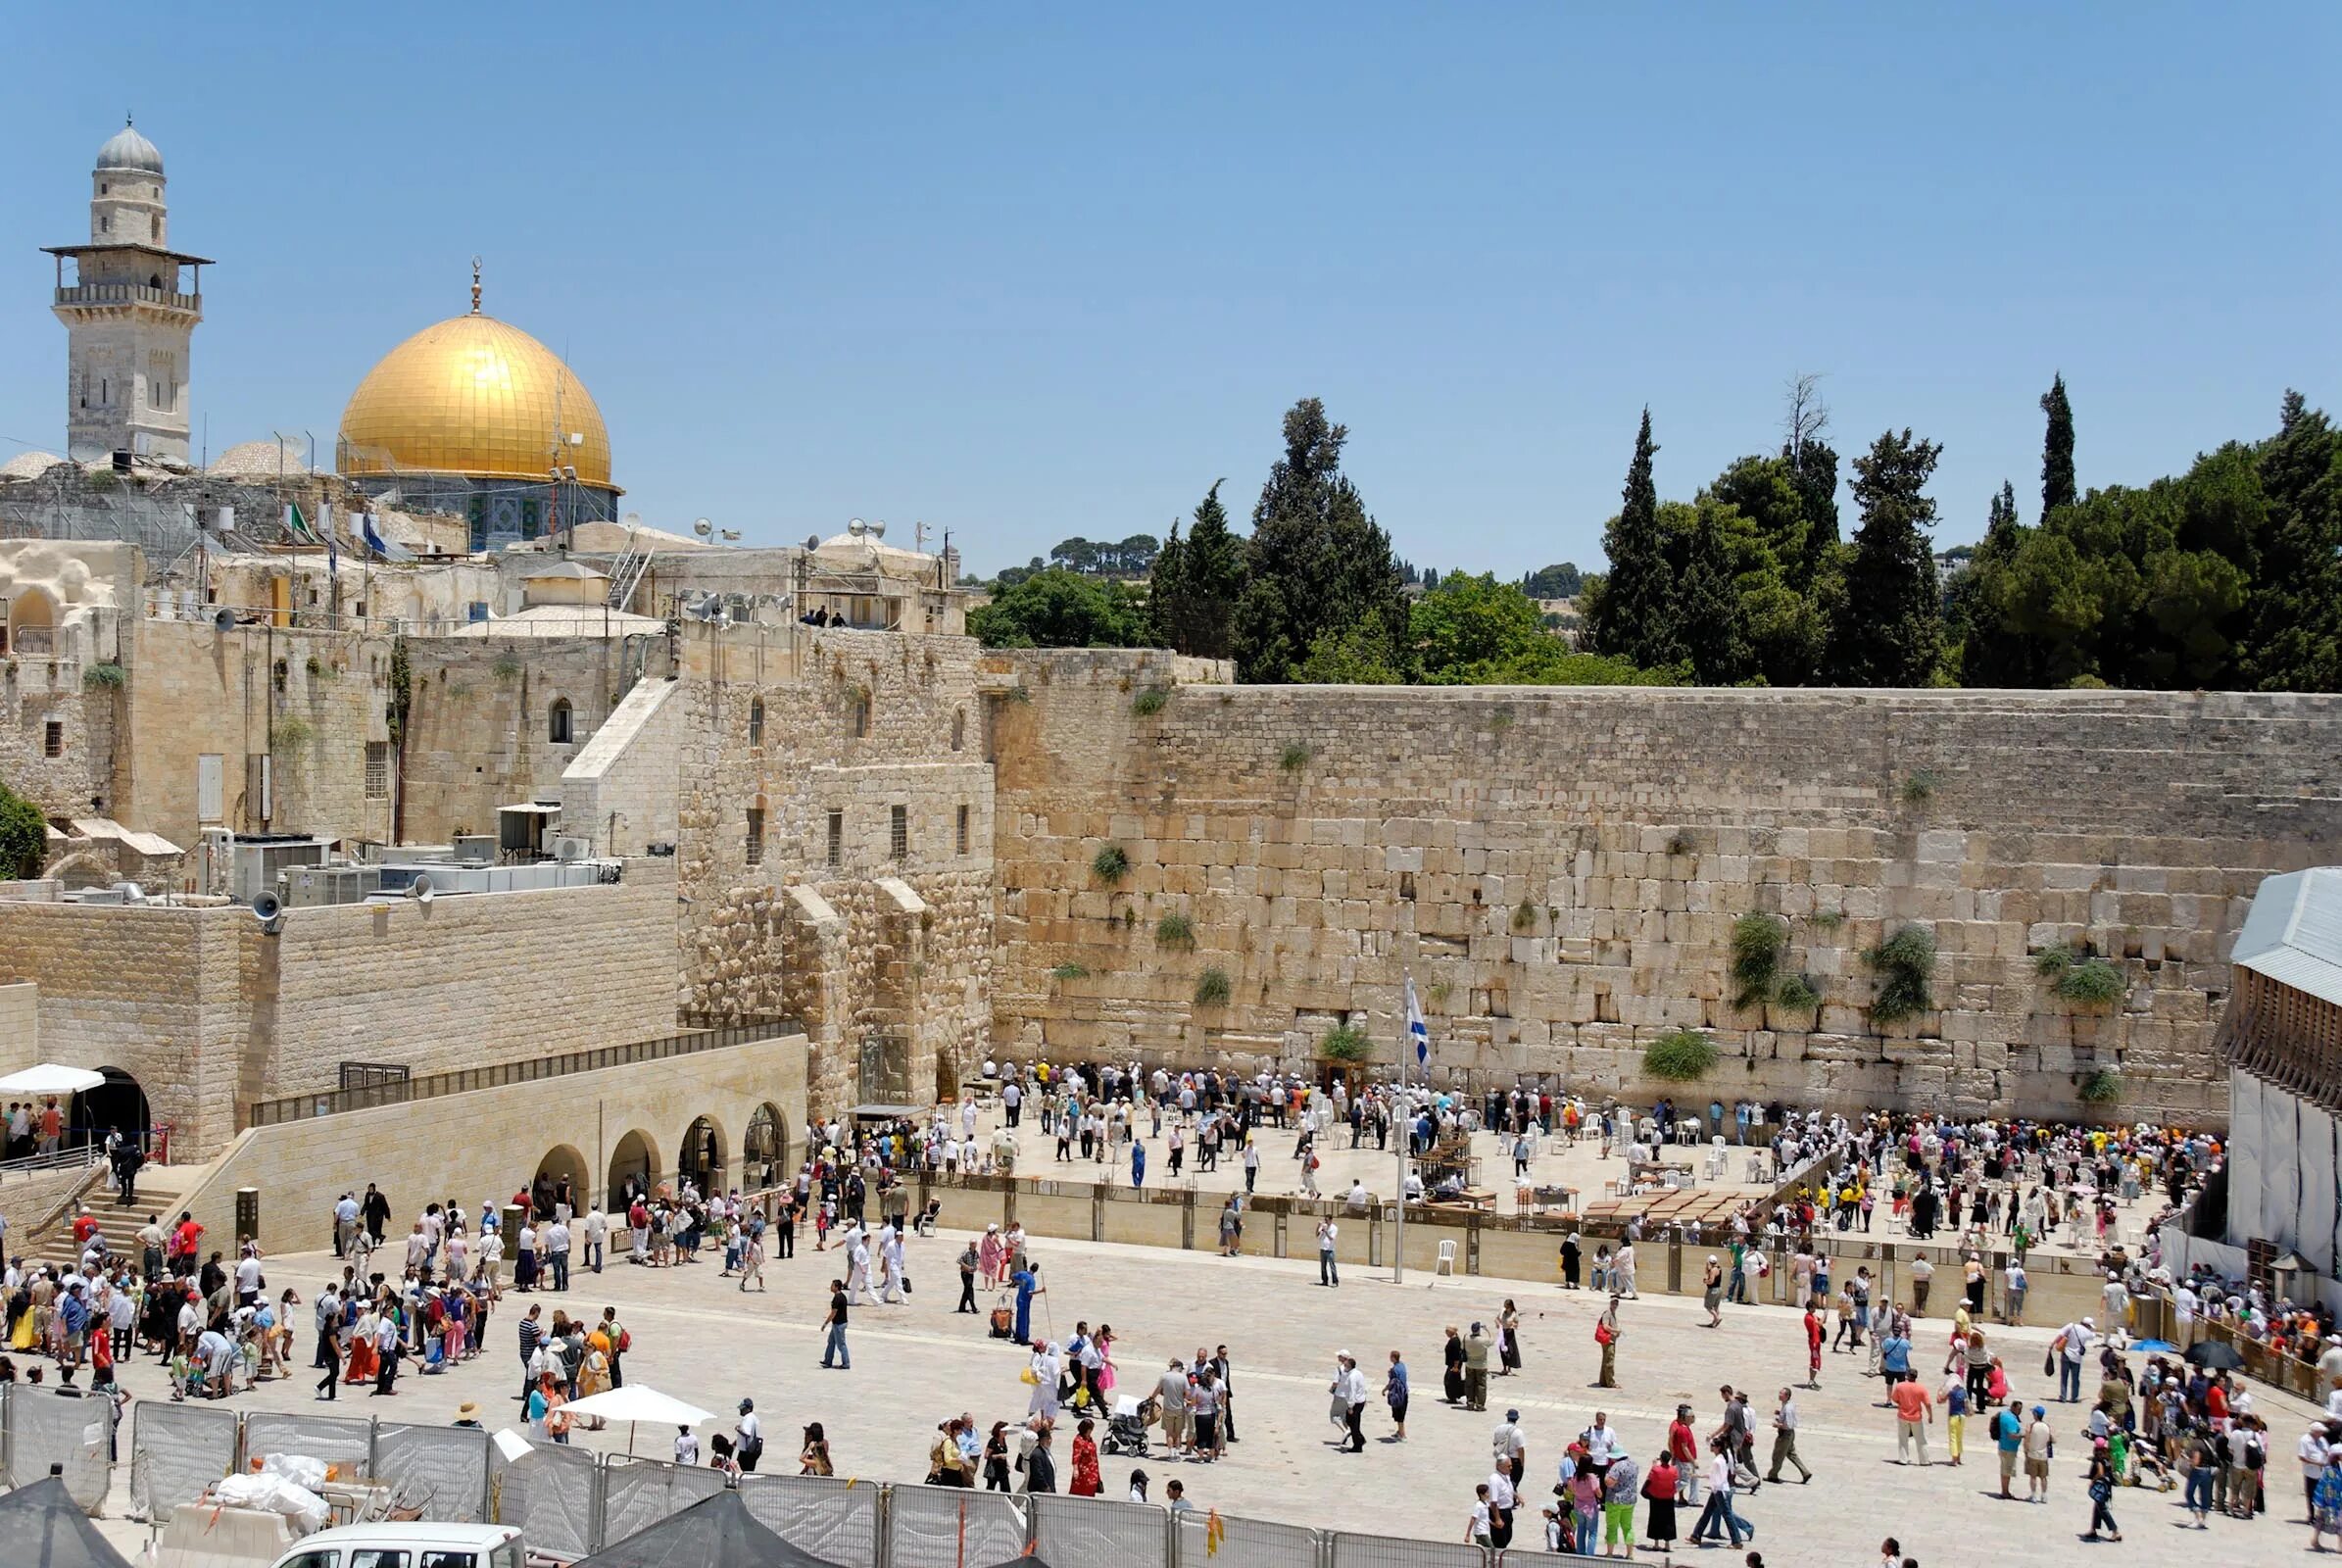 В какой стране находится город иерусалим. Стена плача в Иерусалиме. Паломничество в Иерусалим. Стены Иерусалимского храма. Стена плача Иерусалим иудаизм.